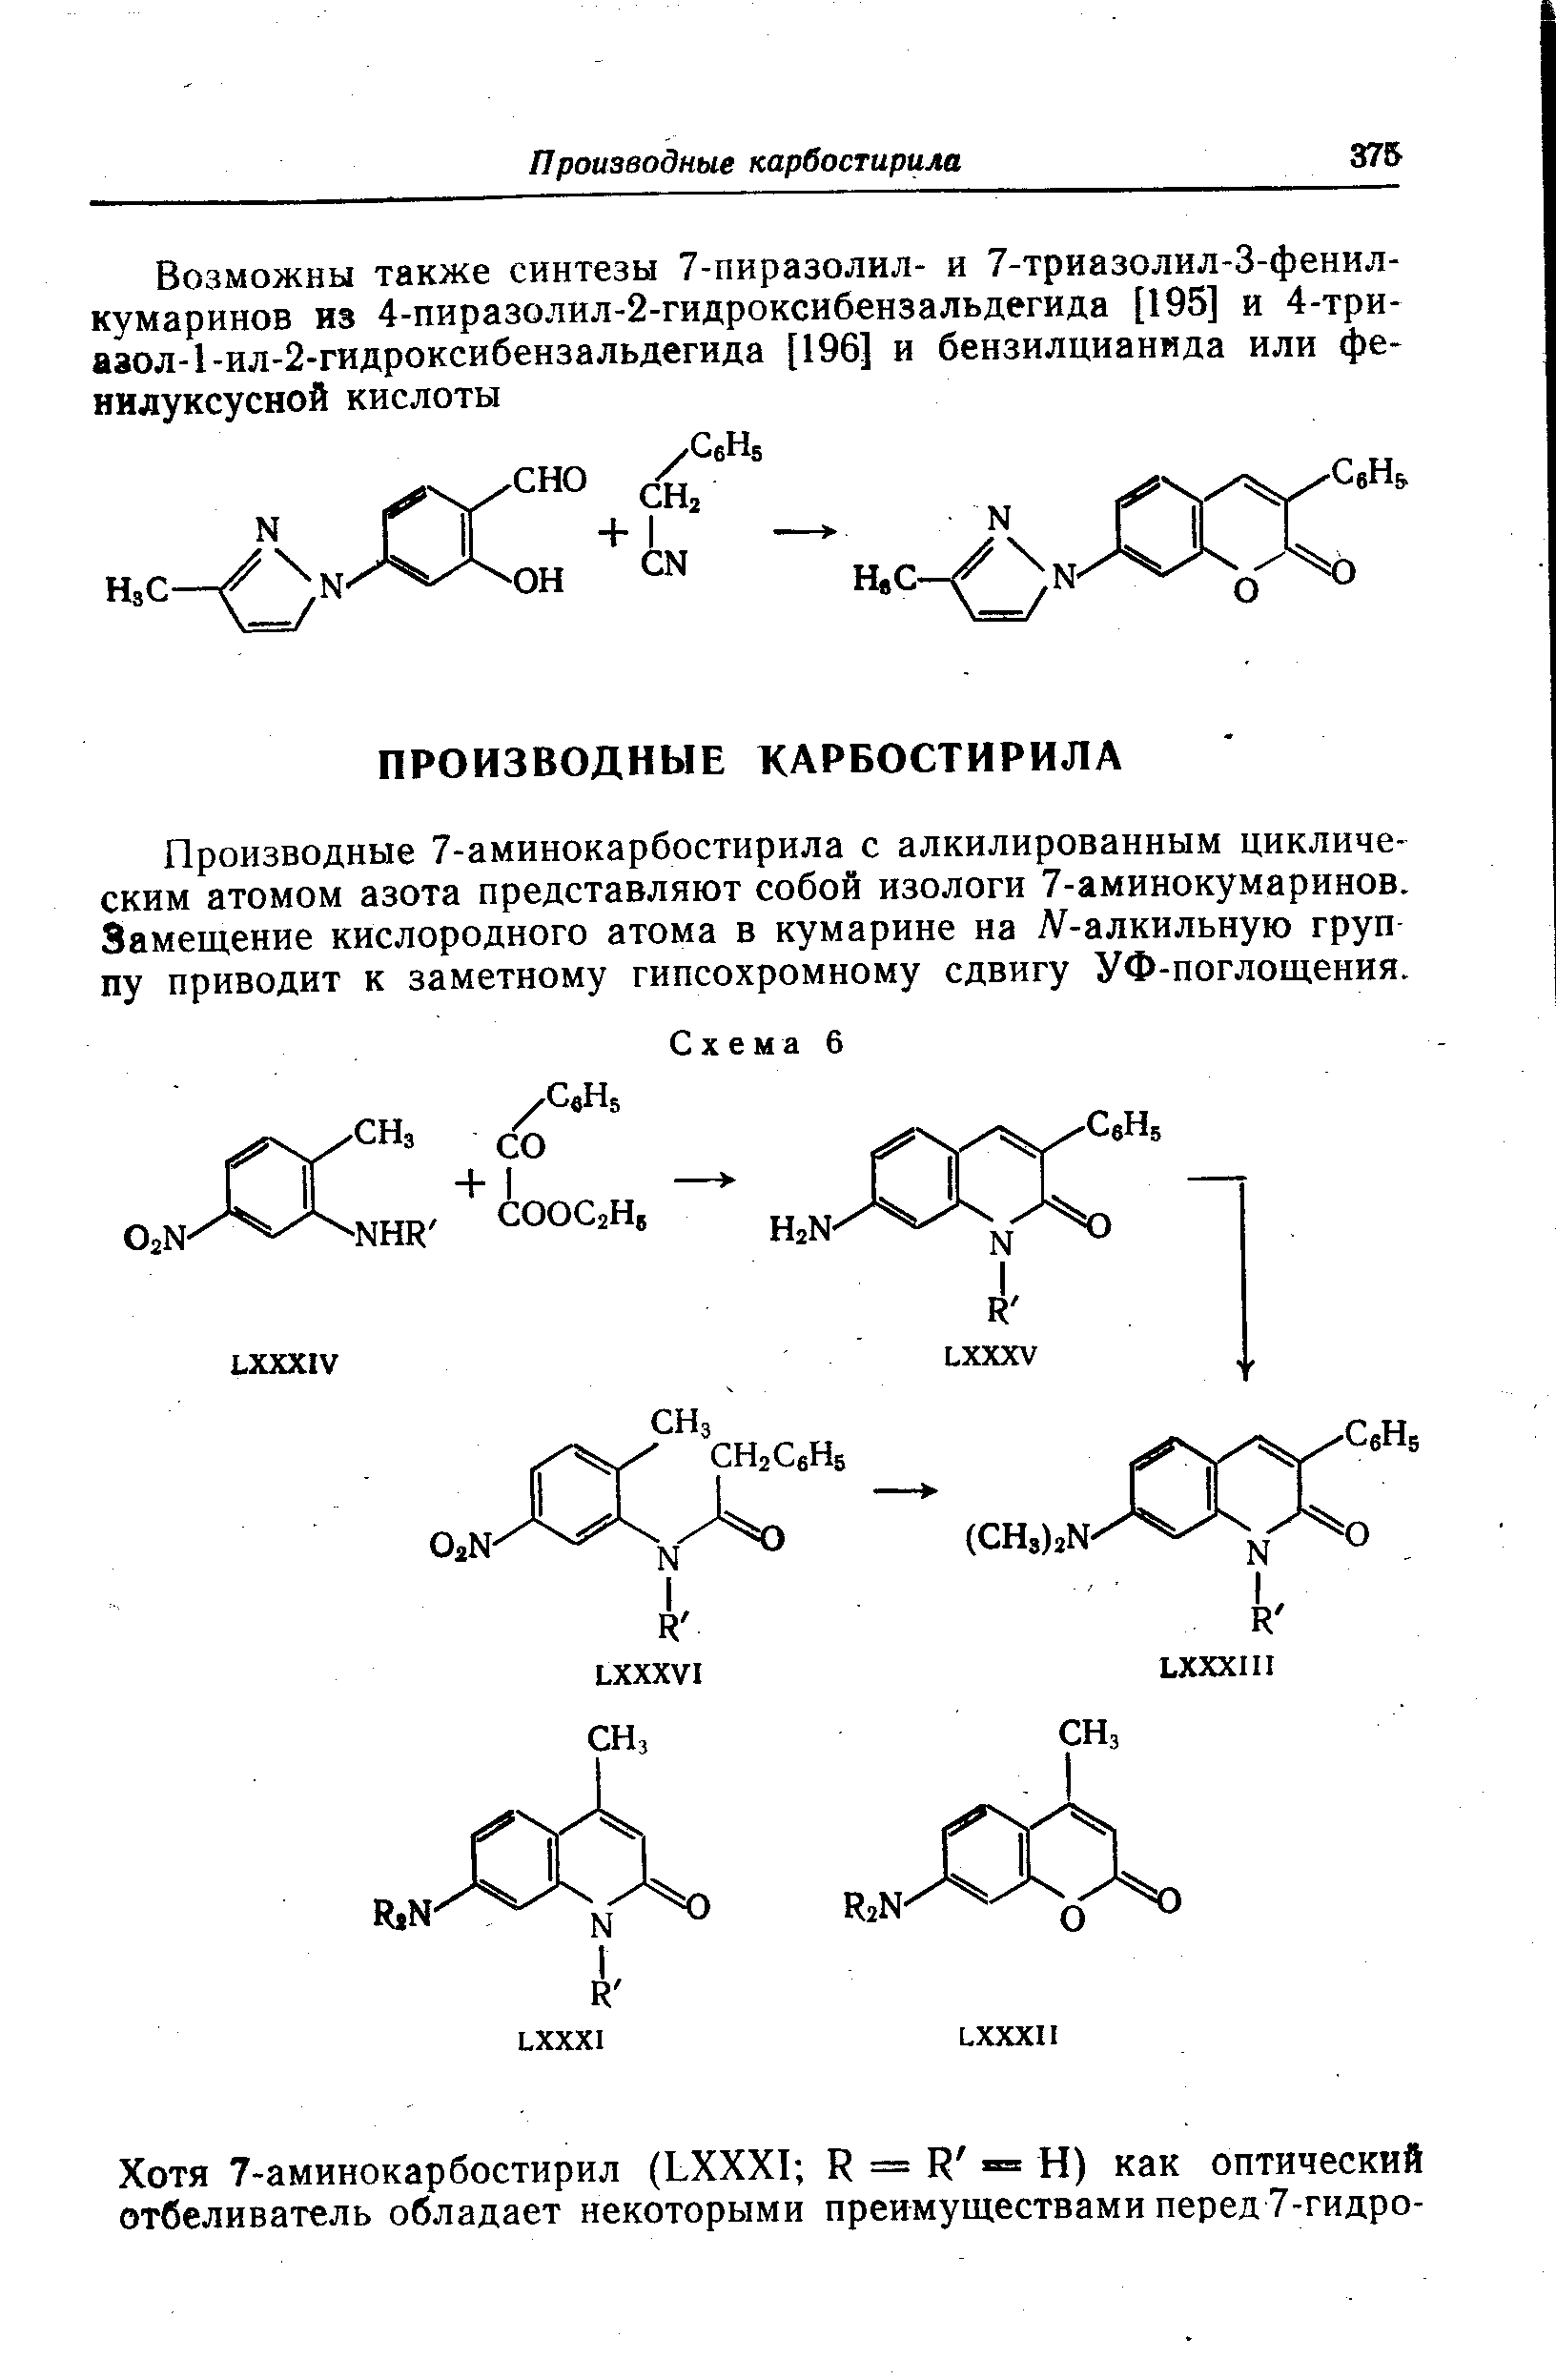 Производные 7-аминокарбостирила с алкилированным циклическим атомом азота представляют собой изологи 7-аминокумаринов. Замещение кислородного атома в кумарине на Л -алкильную груп пу приводит к заметному гипсохромному сдвигу УФ-поглощения.